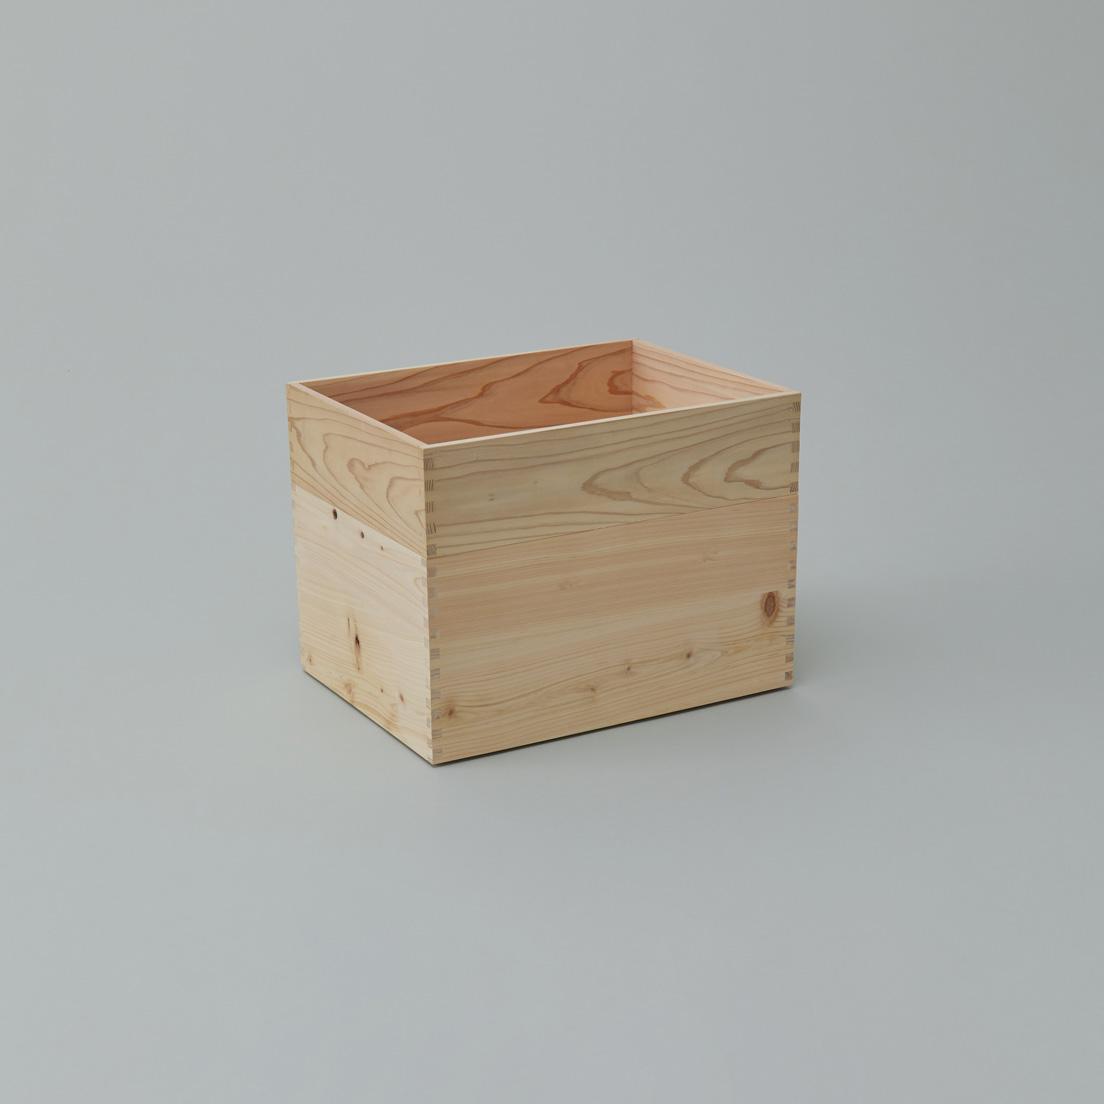 A BOX〈aemono〉
 by 真喜志奈美
「東京」をテーマに製材、乾燥、加工の全工程を都内で行う木箱。天然木の木目や節を生かし、表情がそれぞれ異なる。釘を使わず接合し、底面には裏桟をつけ、スタッキングを可能に。主張しない佇まいの随所にこだわりが光る。Ｗ48×Ｄ36×Ｈ12㎝ 12,100円、Ｗ48×Ｄ36×Ｈ24㎝ 13,750円（SOLO TEL 03 6276 4023）。